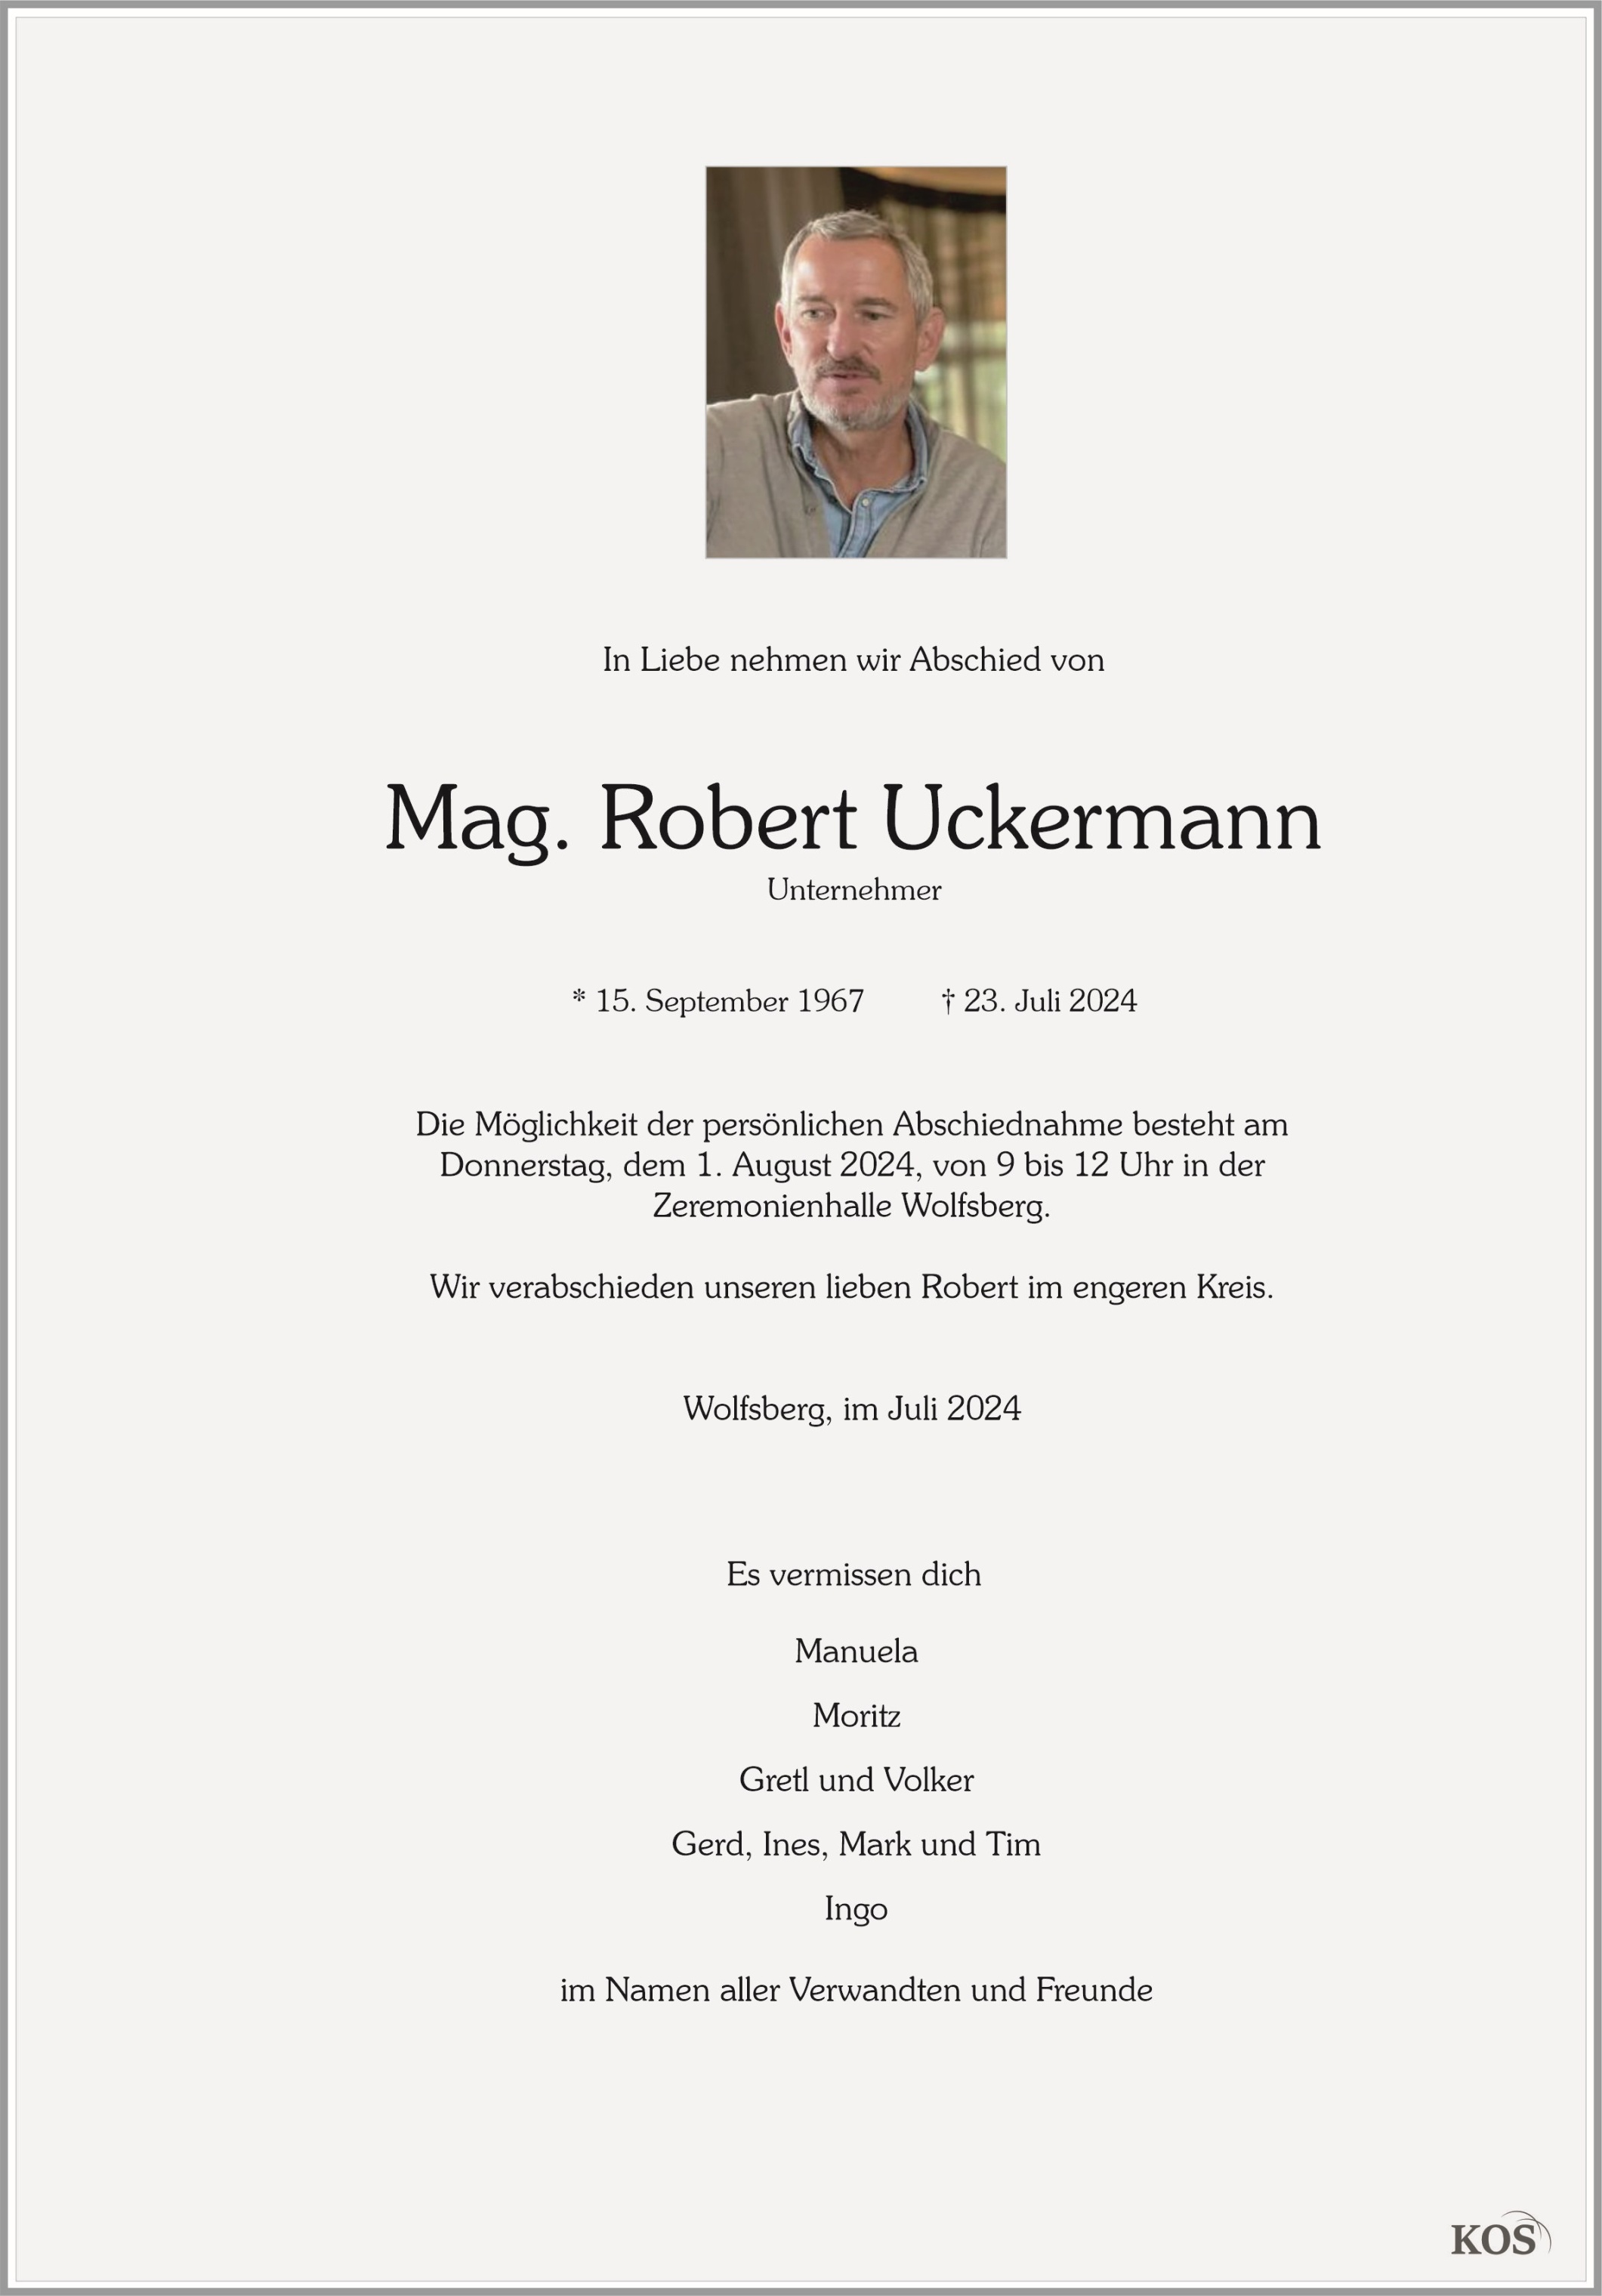 Robert Uckermann